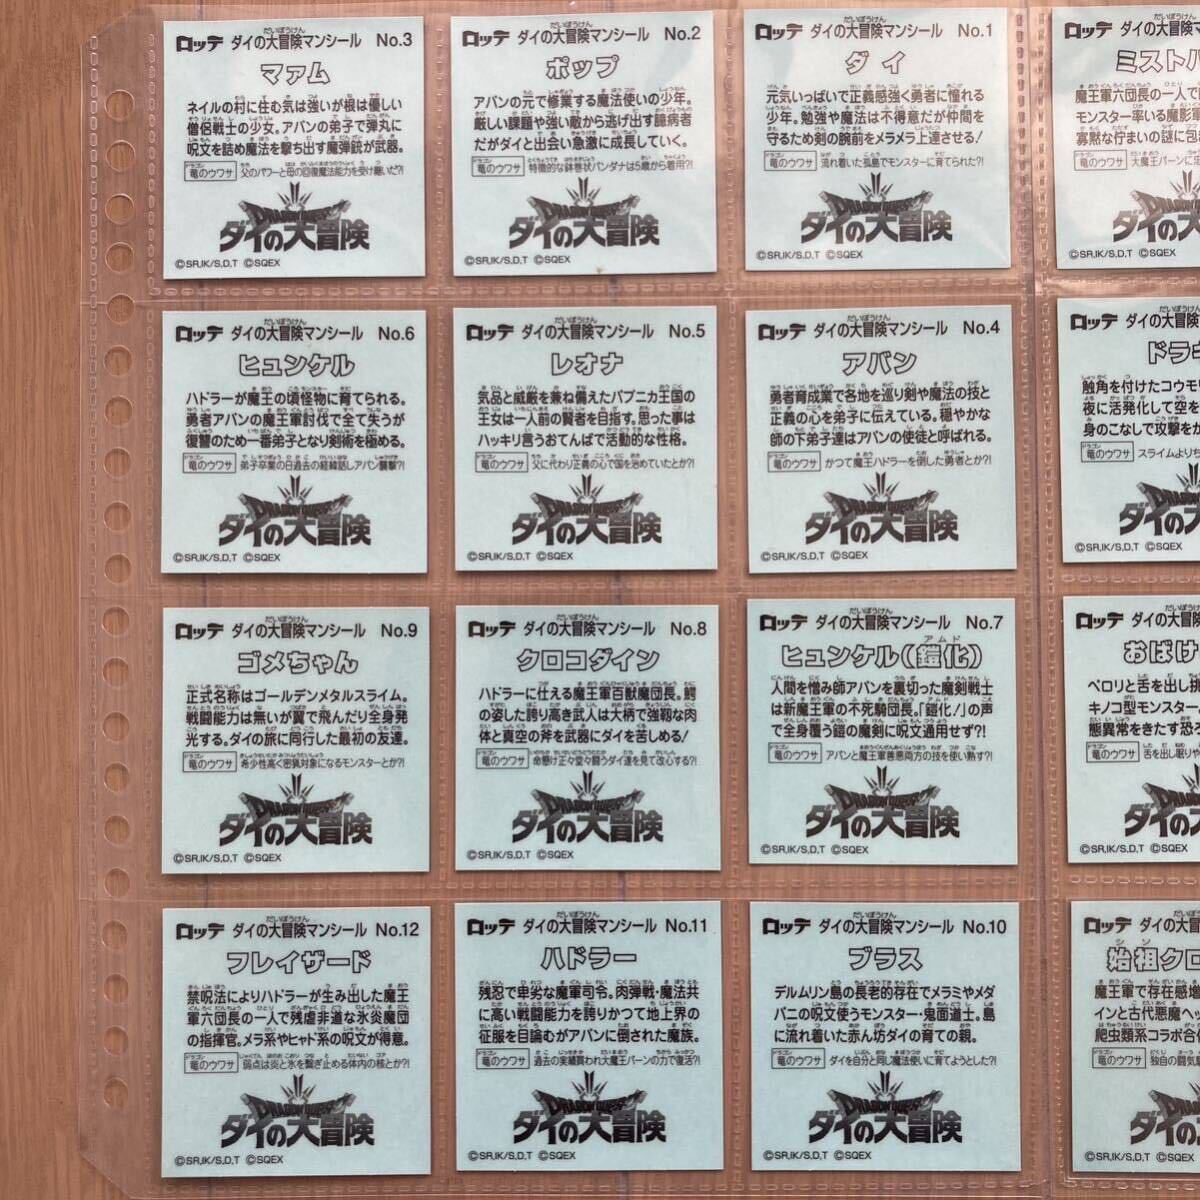 【送料無料】 ロッテ ダイの大冒険マン チョコ シール 全24種 コンプリートセット ビックリマン コンプ フルコンプ